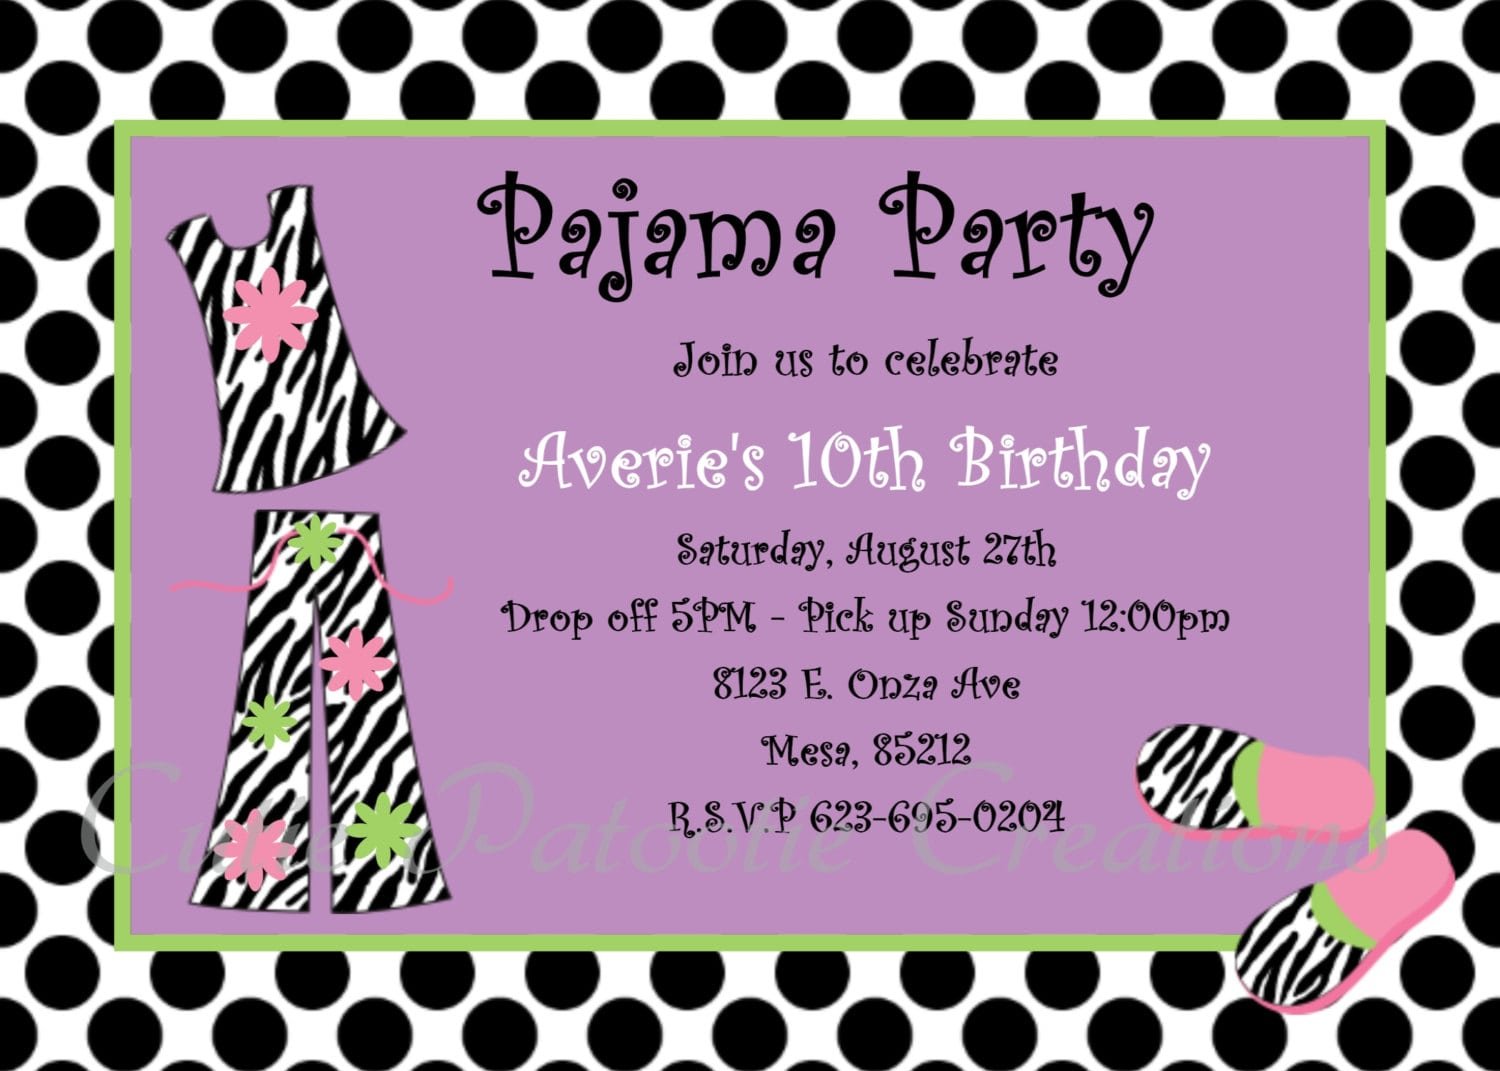 Pajama Party Invitation Free Printable